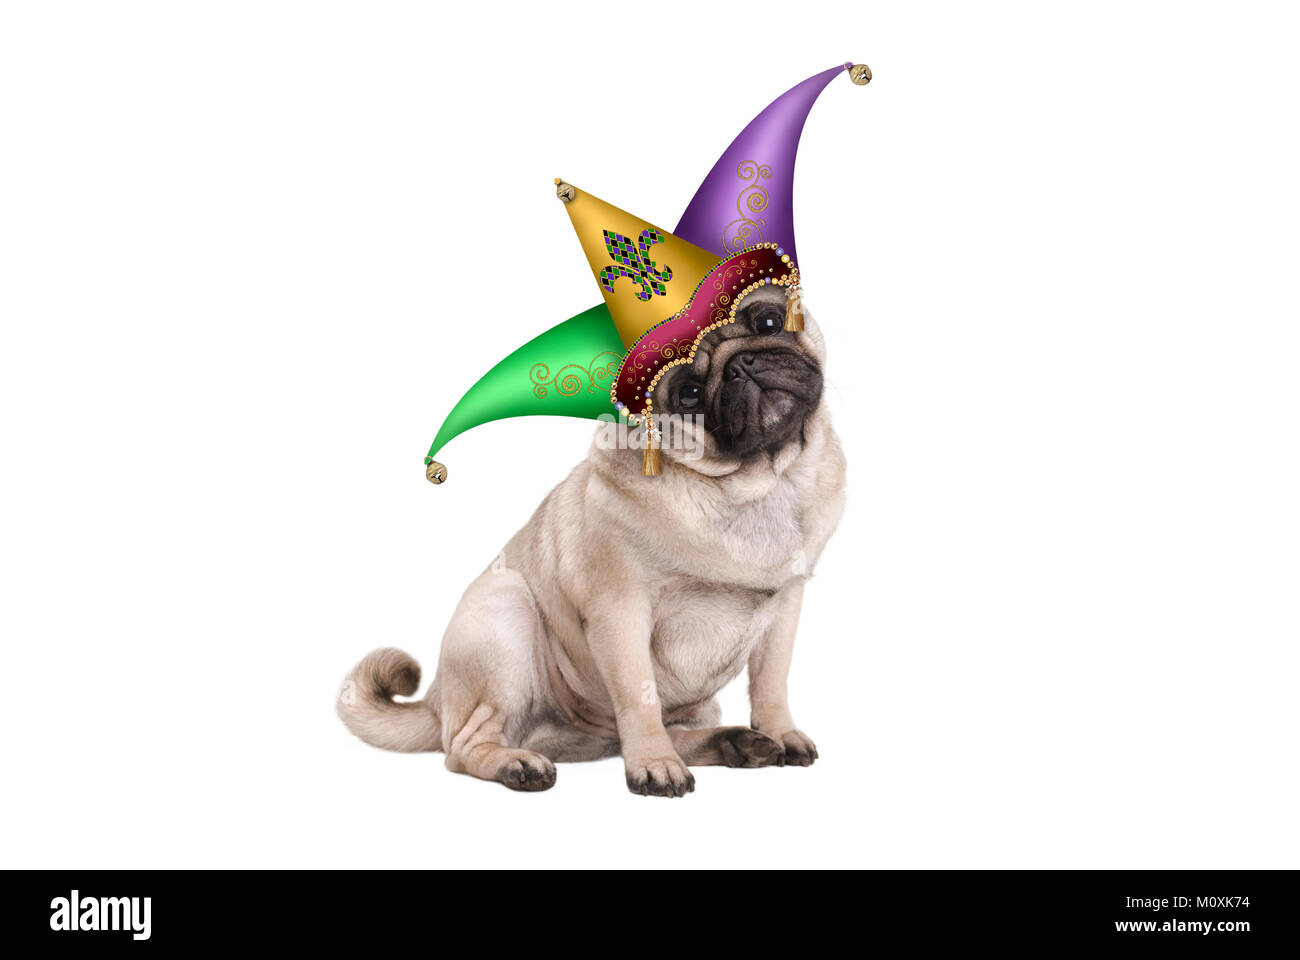 Carino il Mardi Gras carnival pug cucciolo di cane seduto con la harlequin jester hat, isolato su sfondo bianco Foto Stock